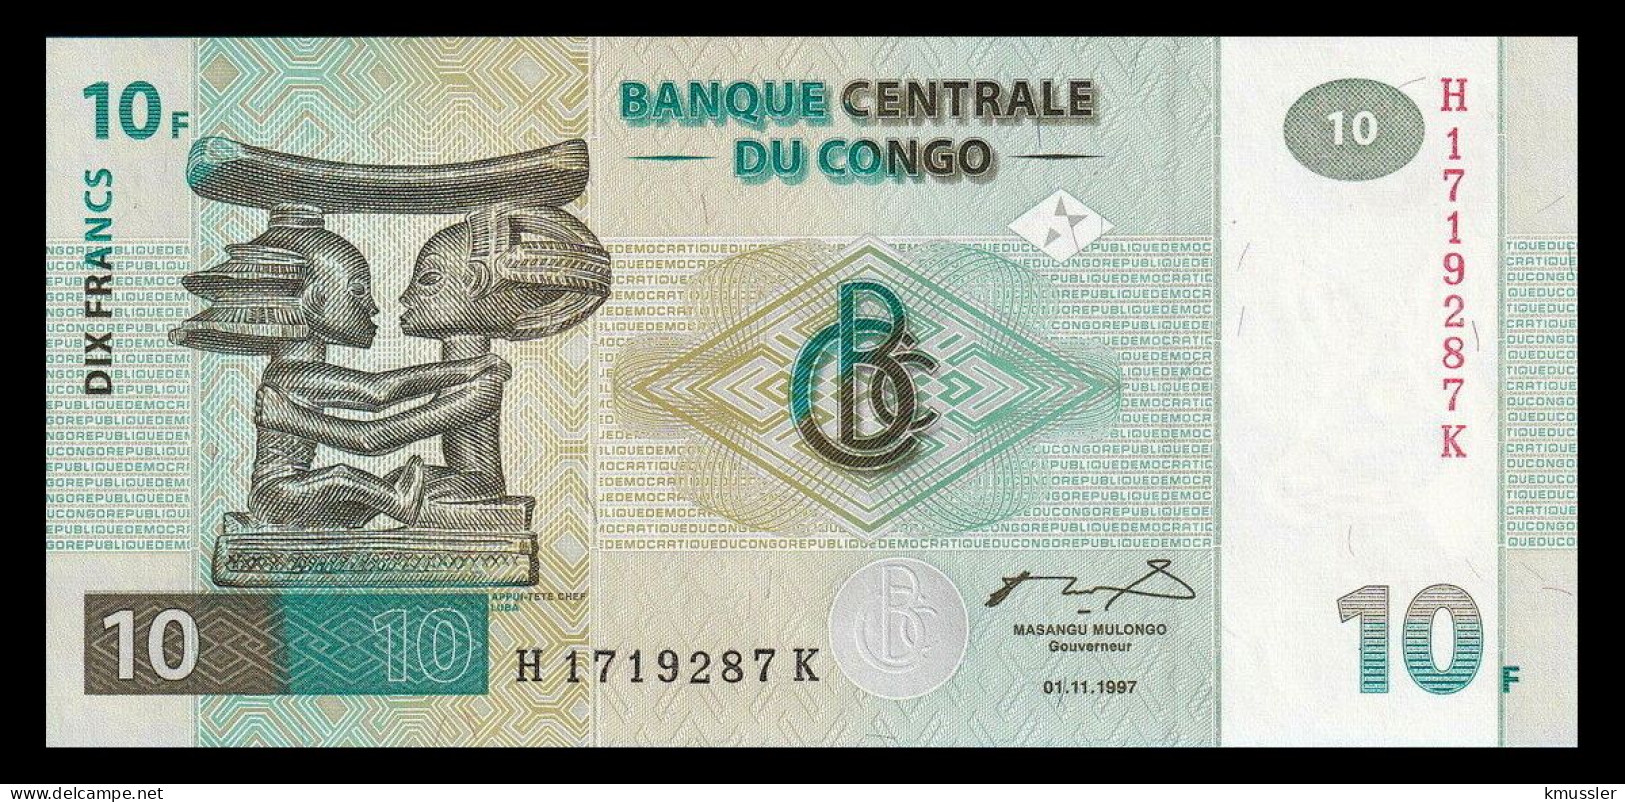 # # # Banknote Kongo (Congo) 10 Francs 1997 (P-87B) 1997 HdM UNC # # # - Democratische Republiek Congo & Zaire